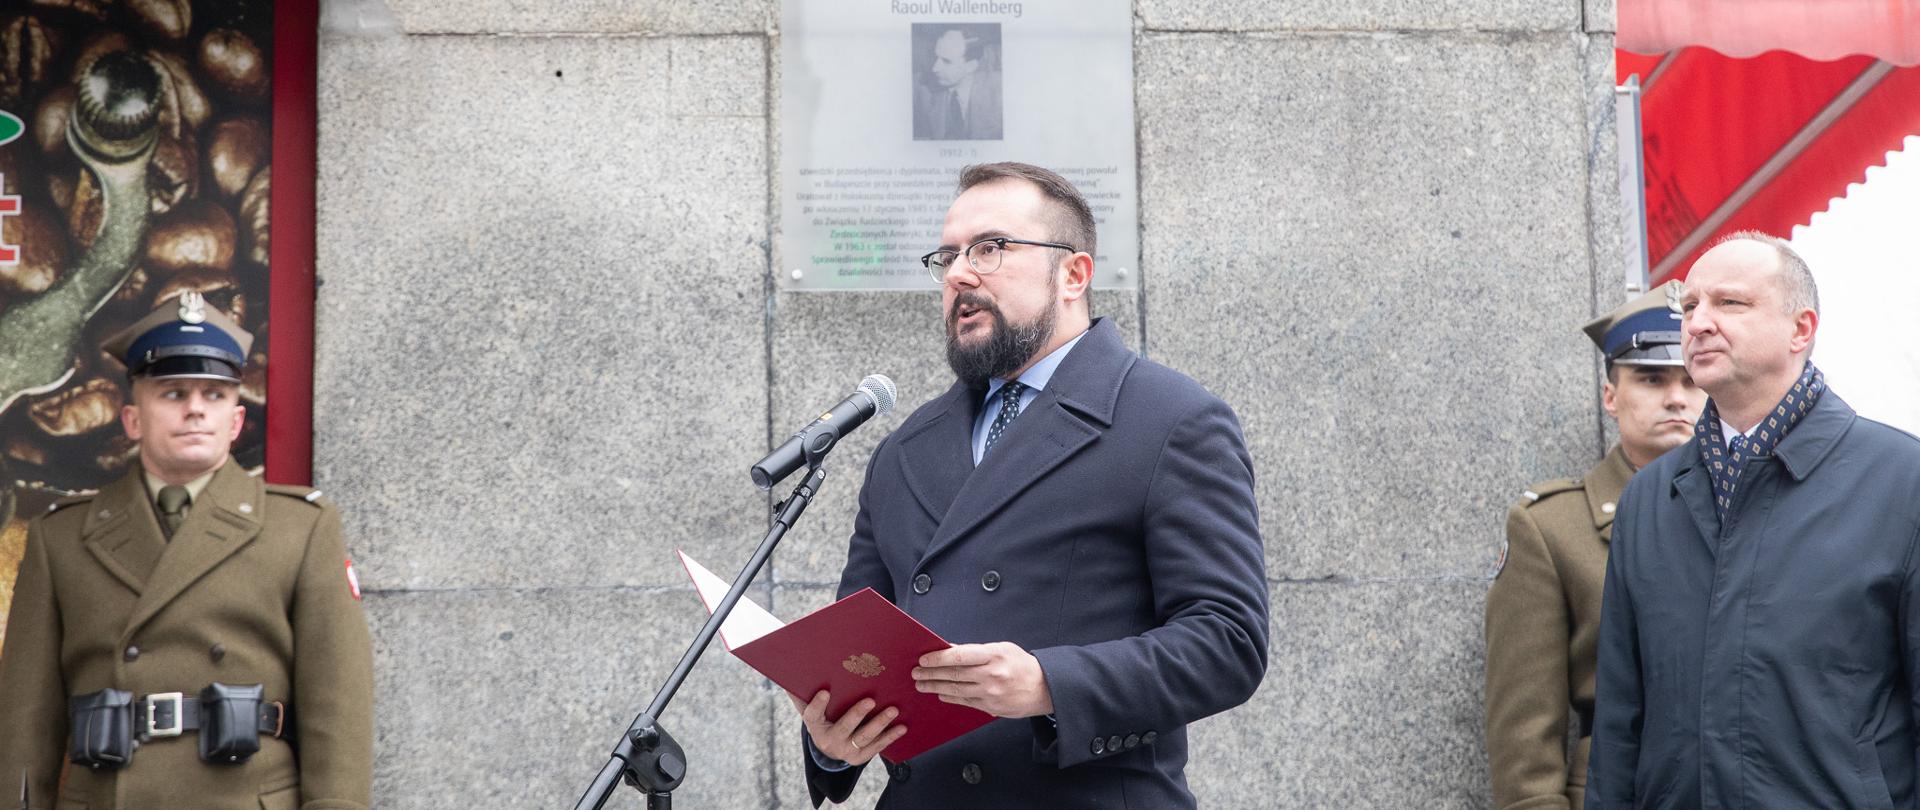 Wiceminister Paweł Jabłoński uczcił pamięć Raoula Wallenberga